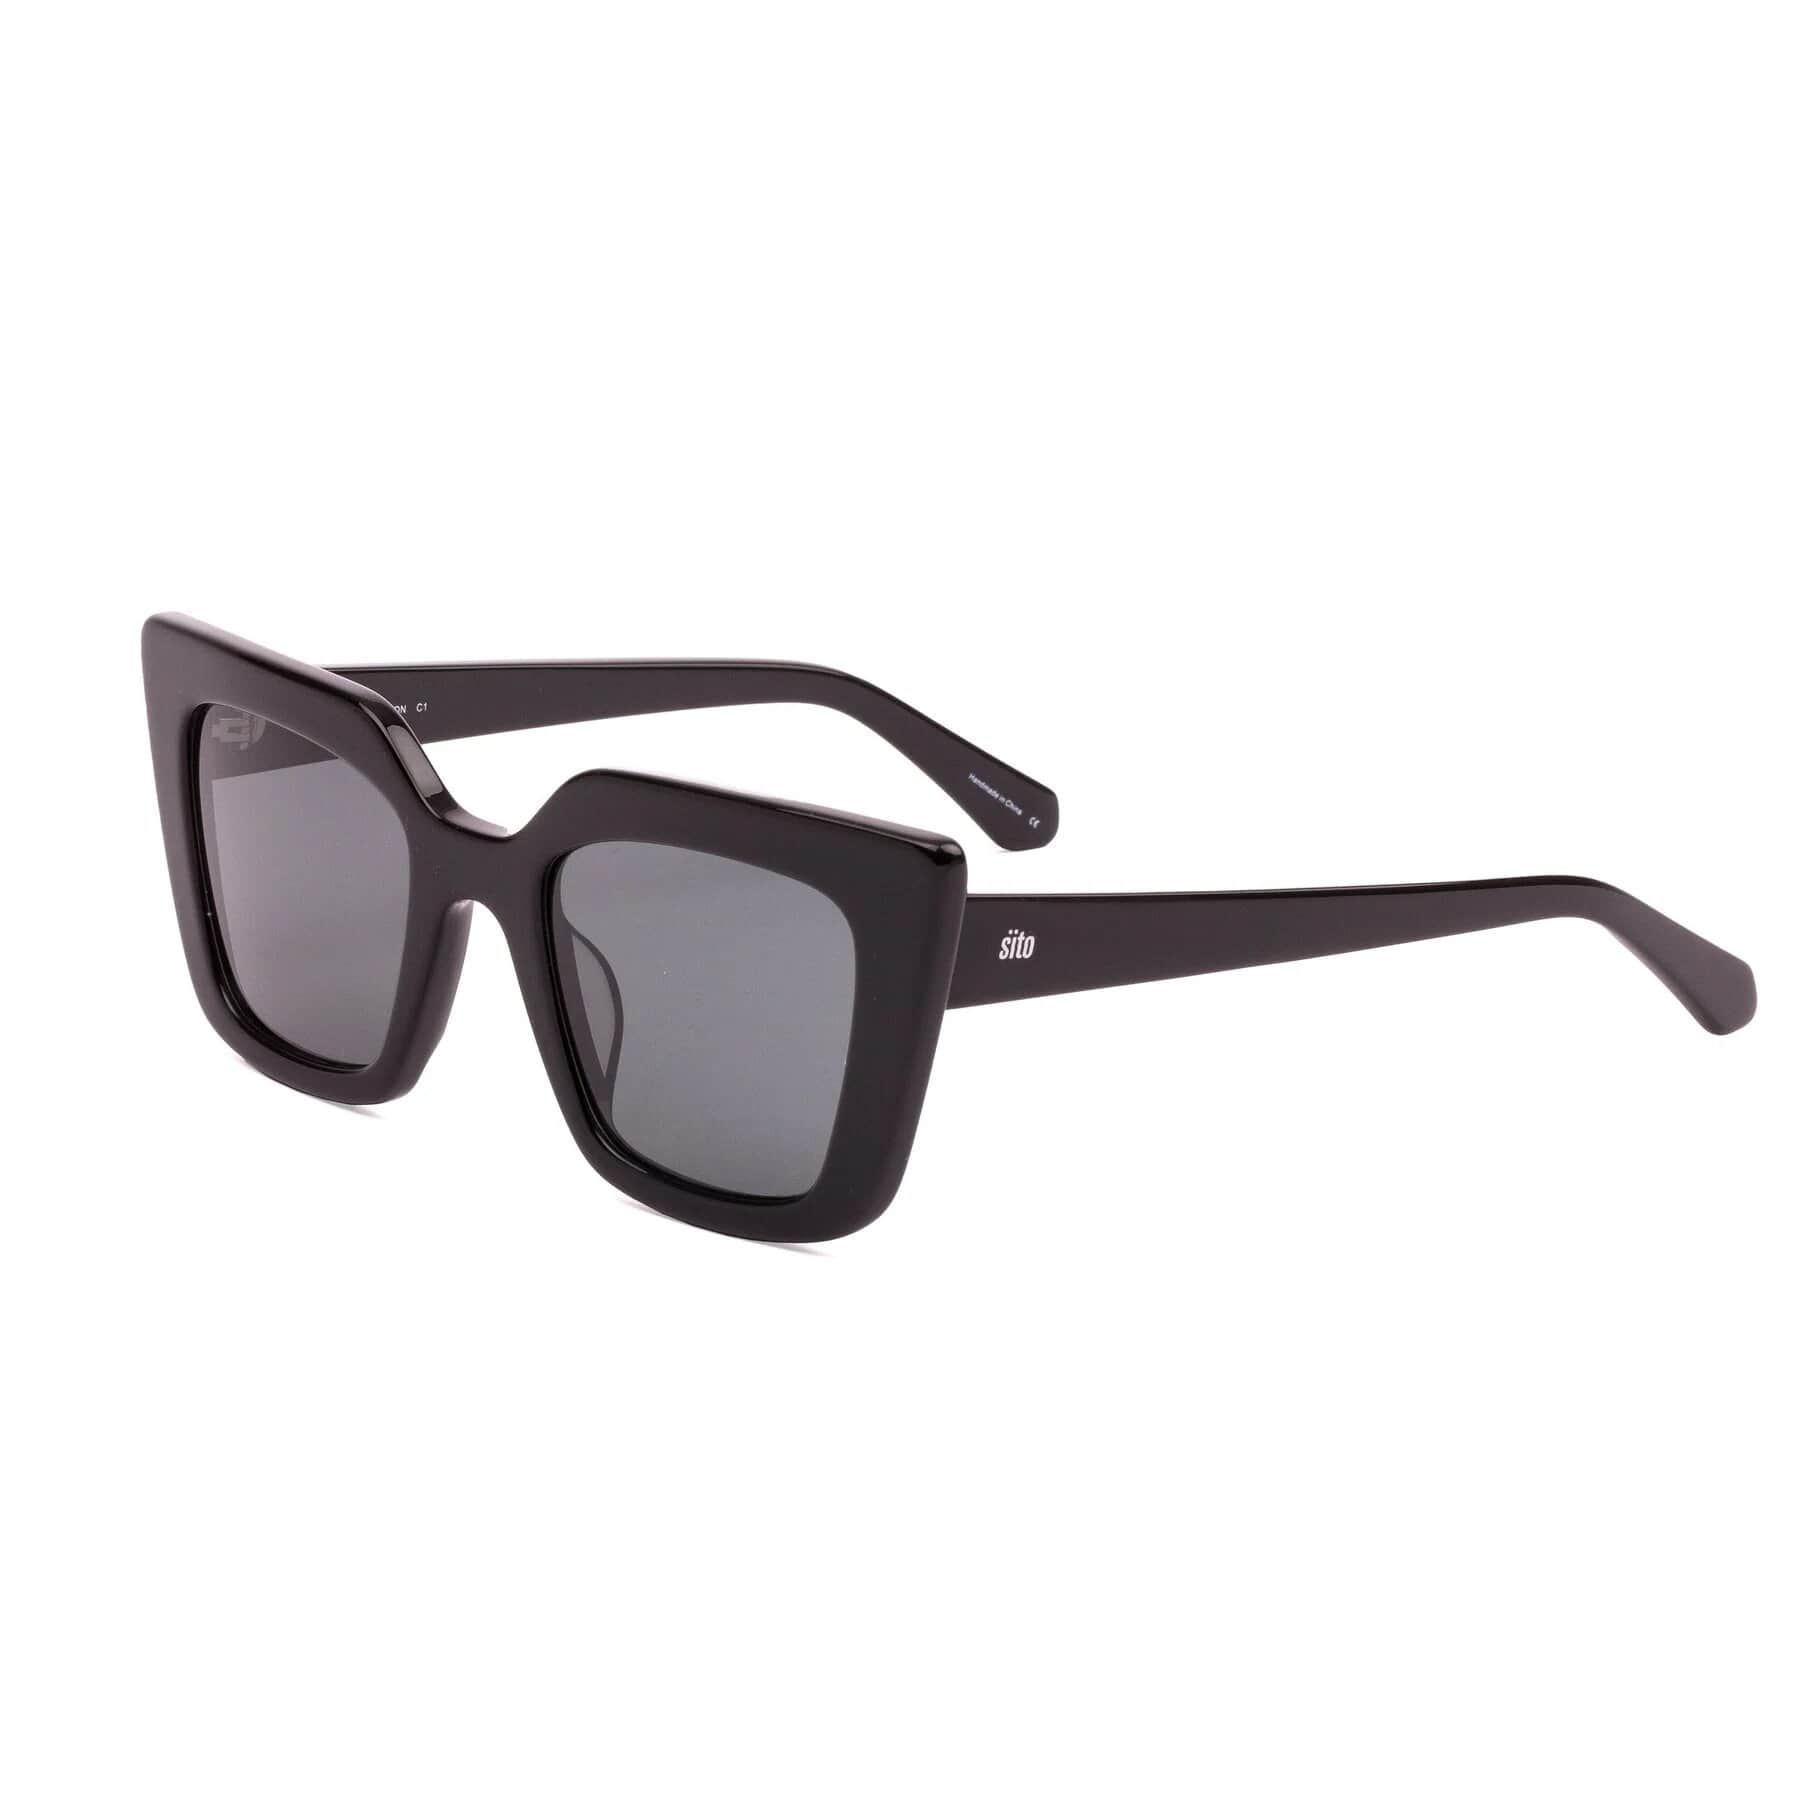 Sito, Cult Vision Polarized Sunglasses (Black)